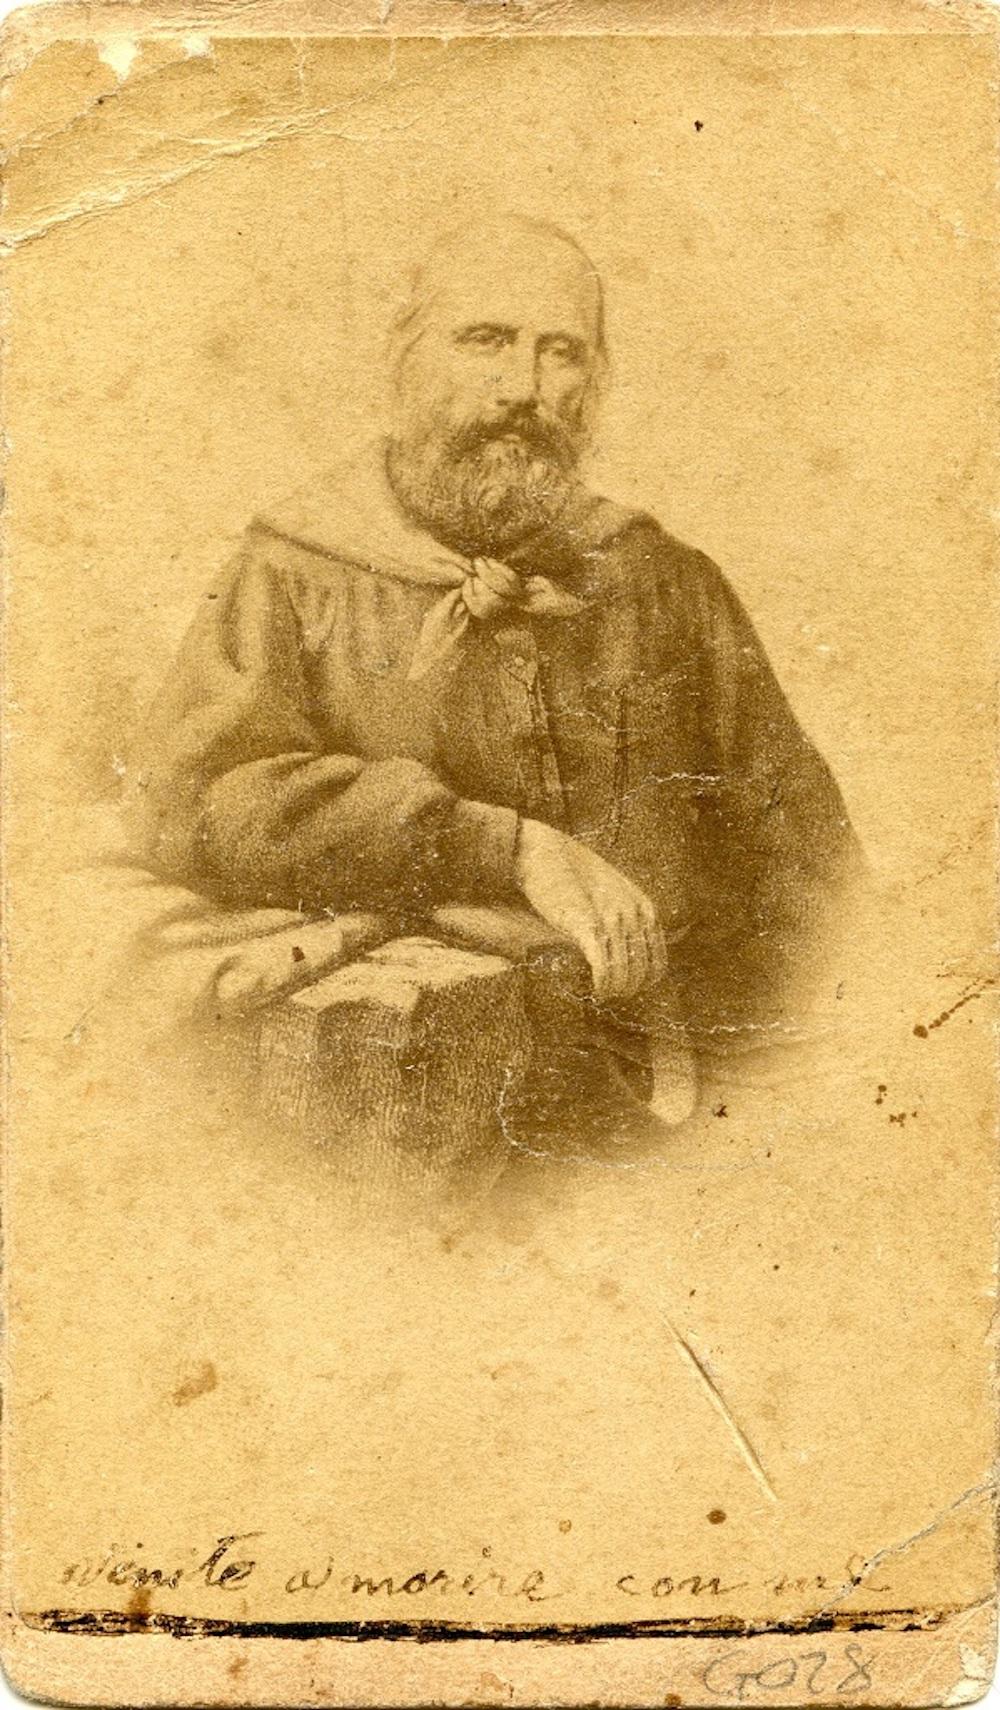 Unknown Portrait Photograph – Porträt von Garibaldi - Original Albumendruck mit handgezeichneten Anmerkungen - 1860/70